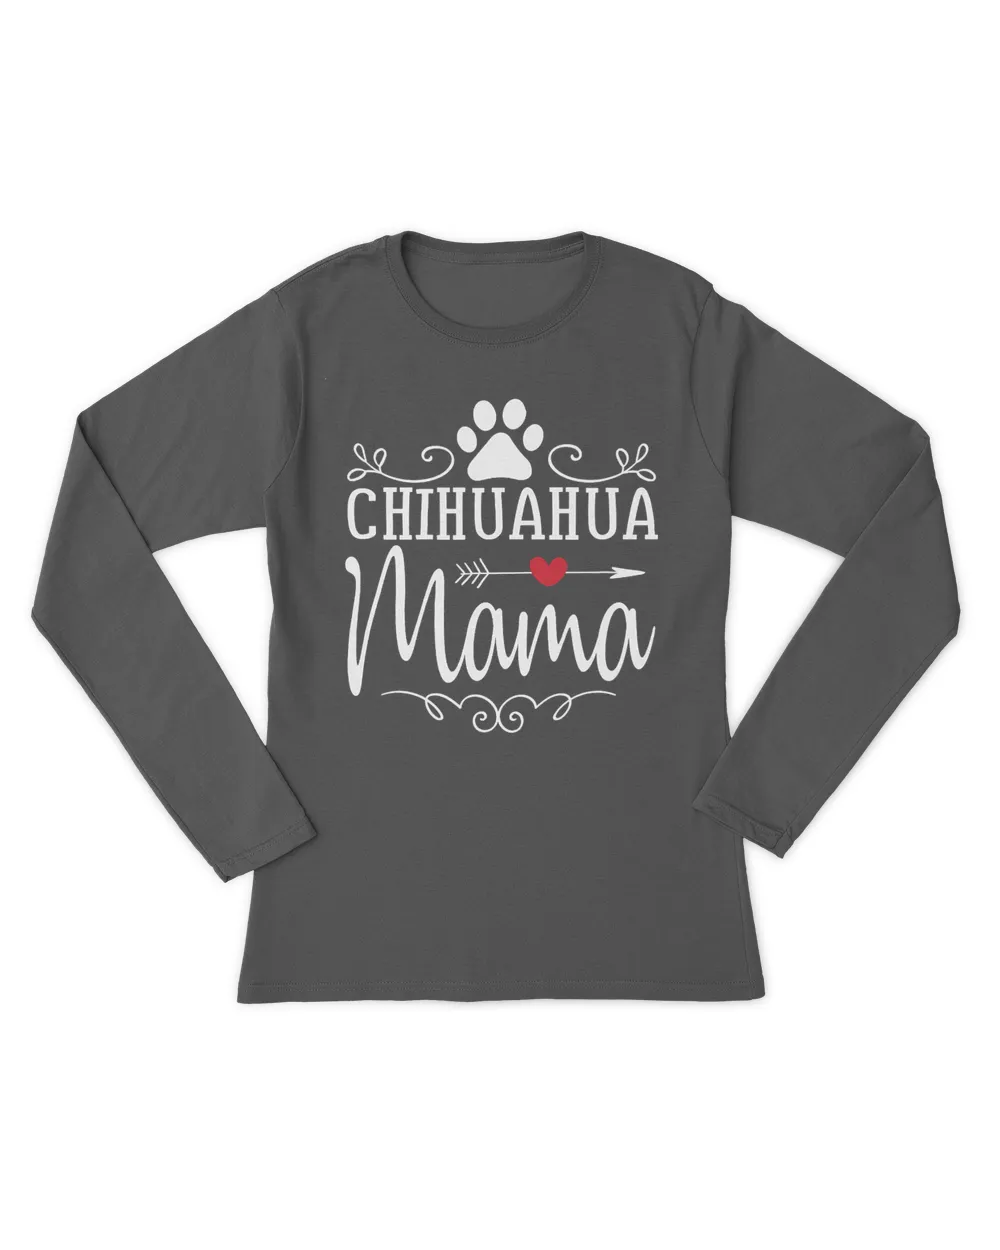 Chihuahua Mama - Chihuahua Lover Shirt Gift T-Shirt